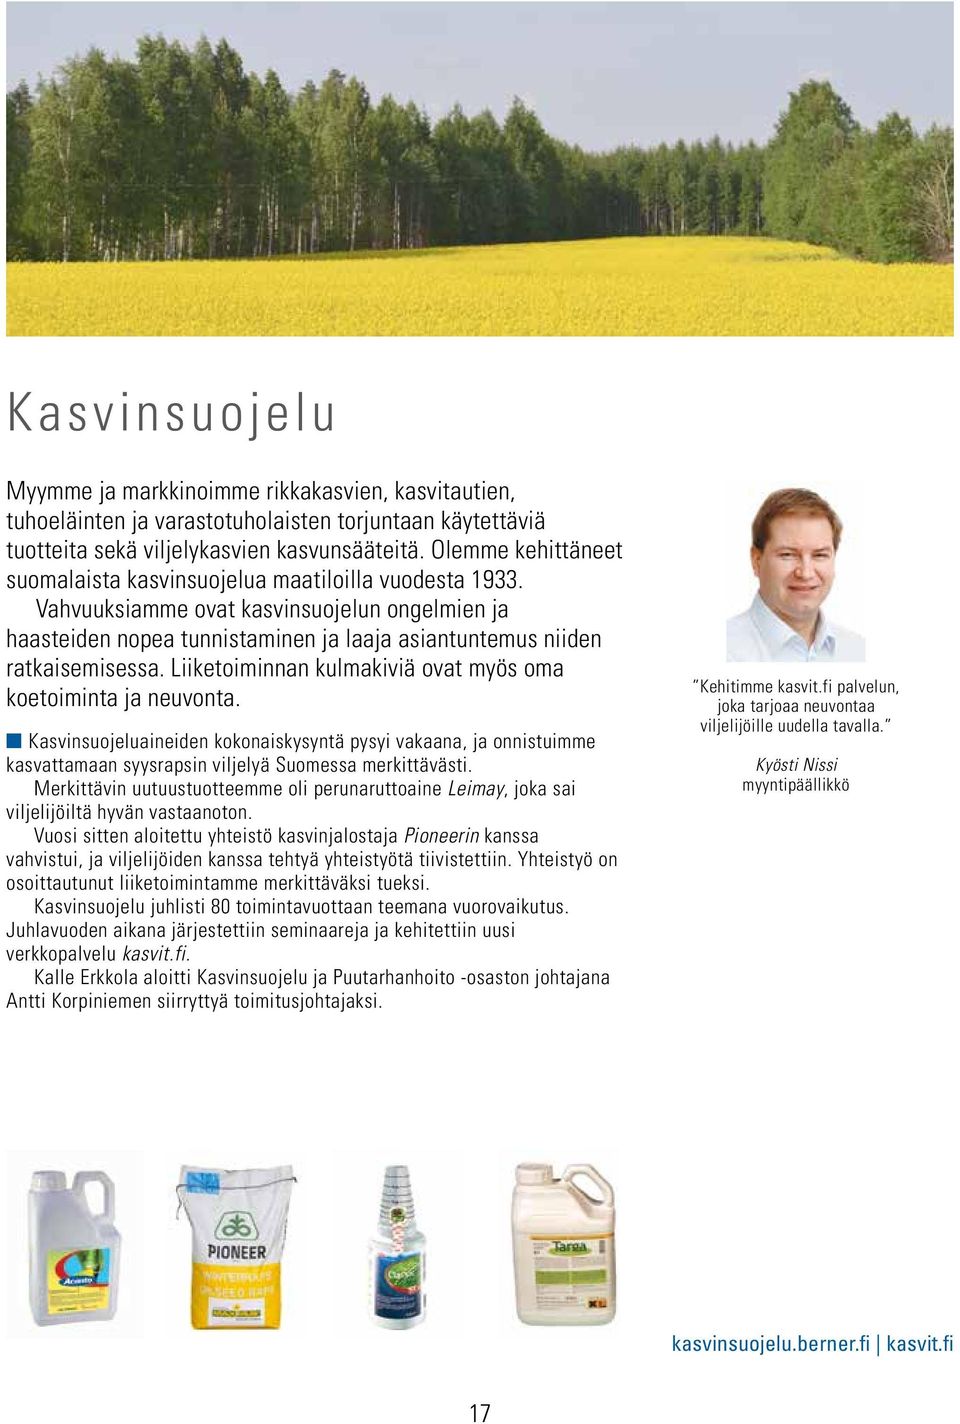 Liiketoiminnan kulmakiviä ovat myös oma koetoiminta ja neuvonta. Kasvinsuojeluaineiden kokonaiskysyntä pysyi vakaana, ja onnistuimme kasvattamaan syysrapsin viljelyä Suomessa merkittävästi.